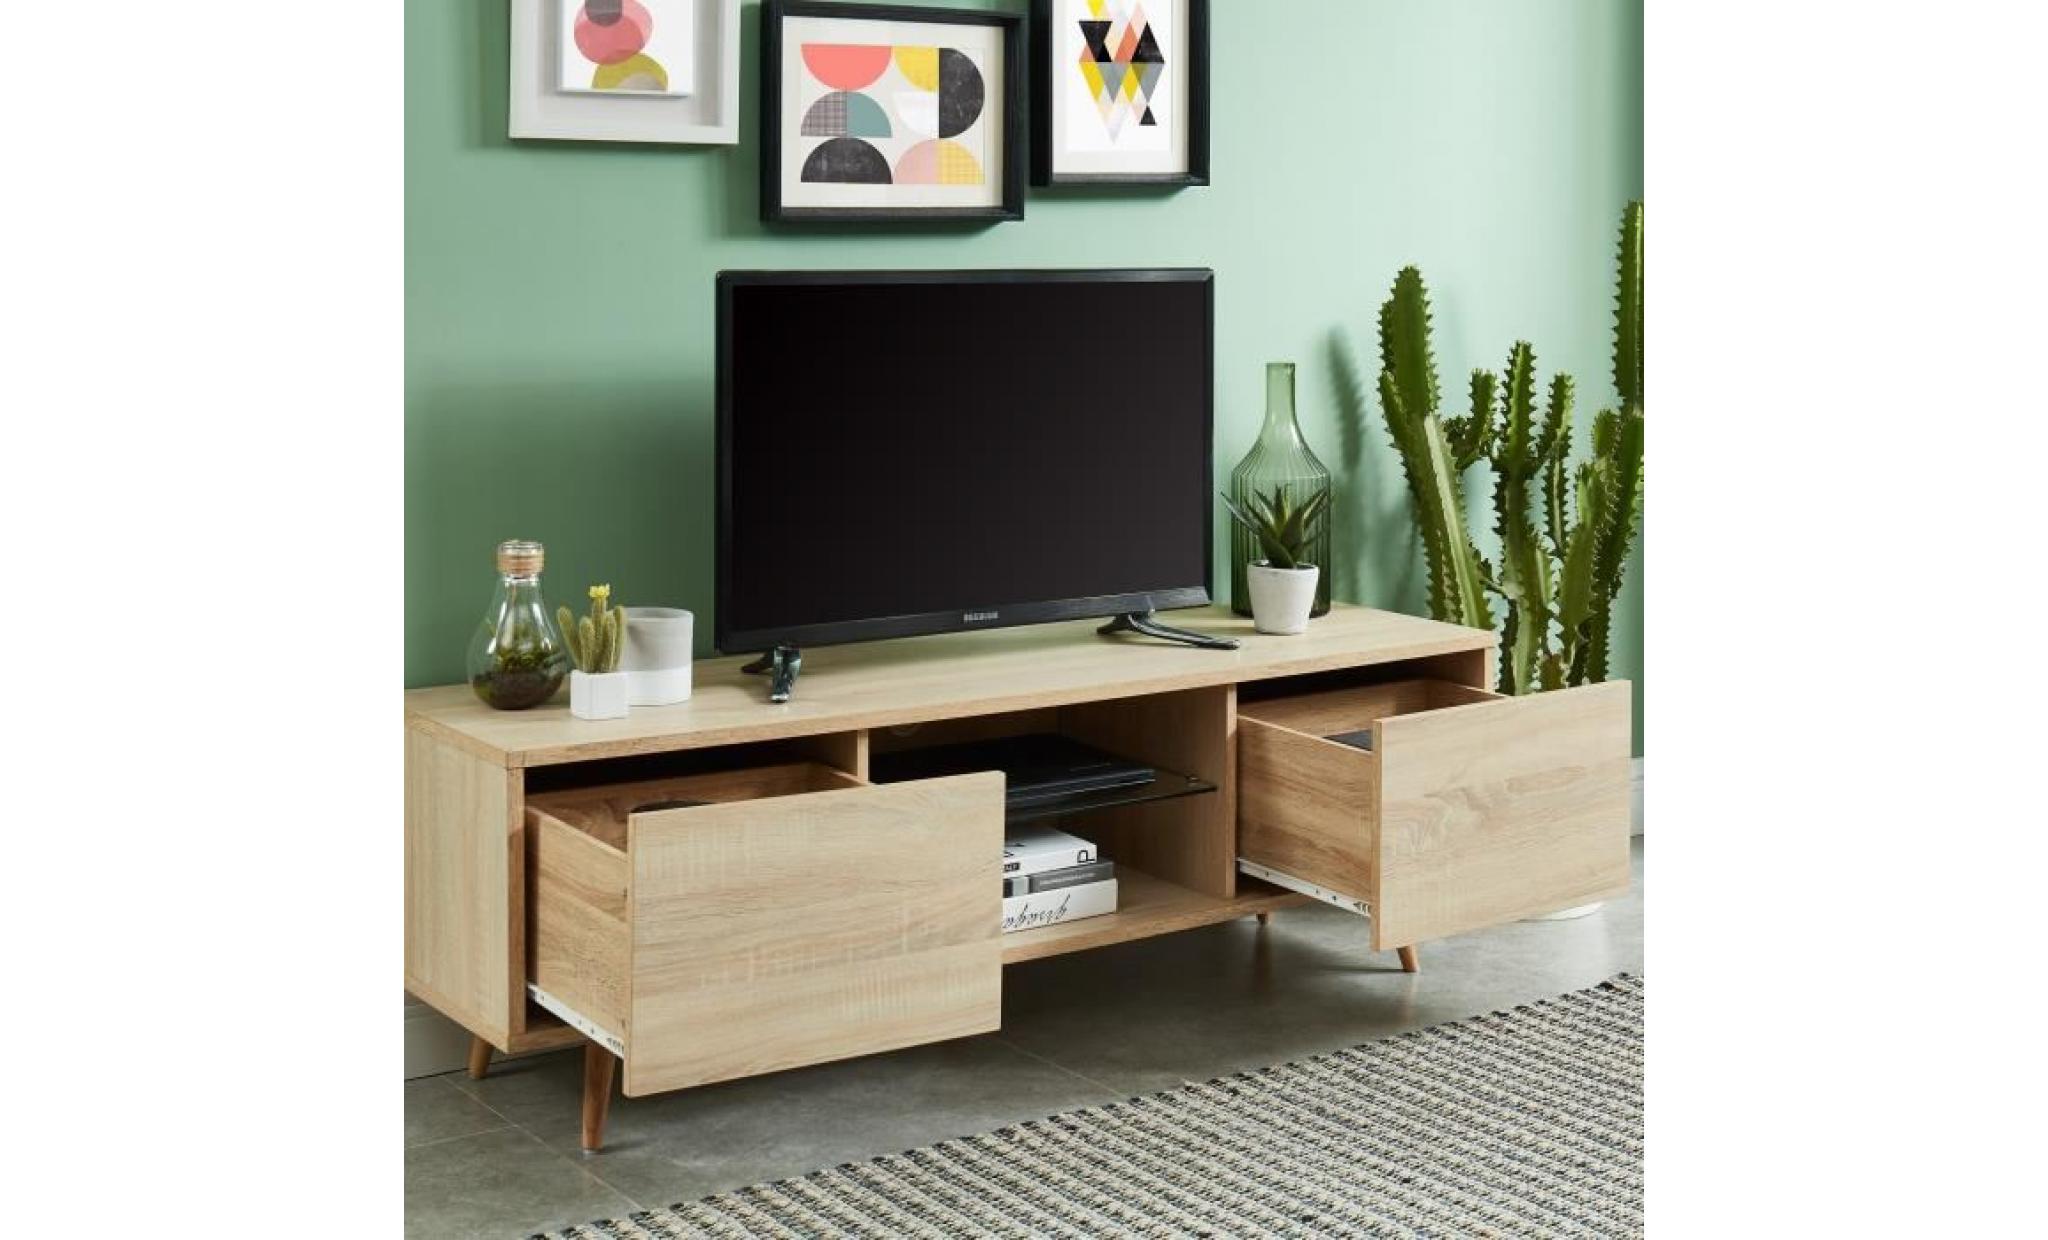 eclat meuble tv à led scandinave décor bois avec pieds en bois chêne massif   l 140 cm pas cher